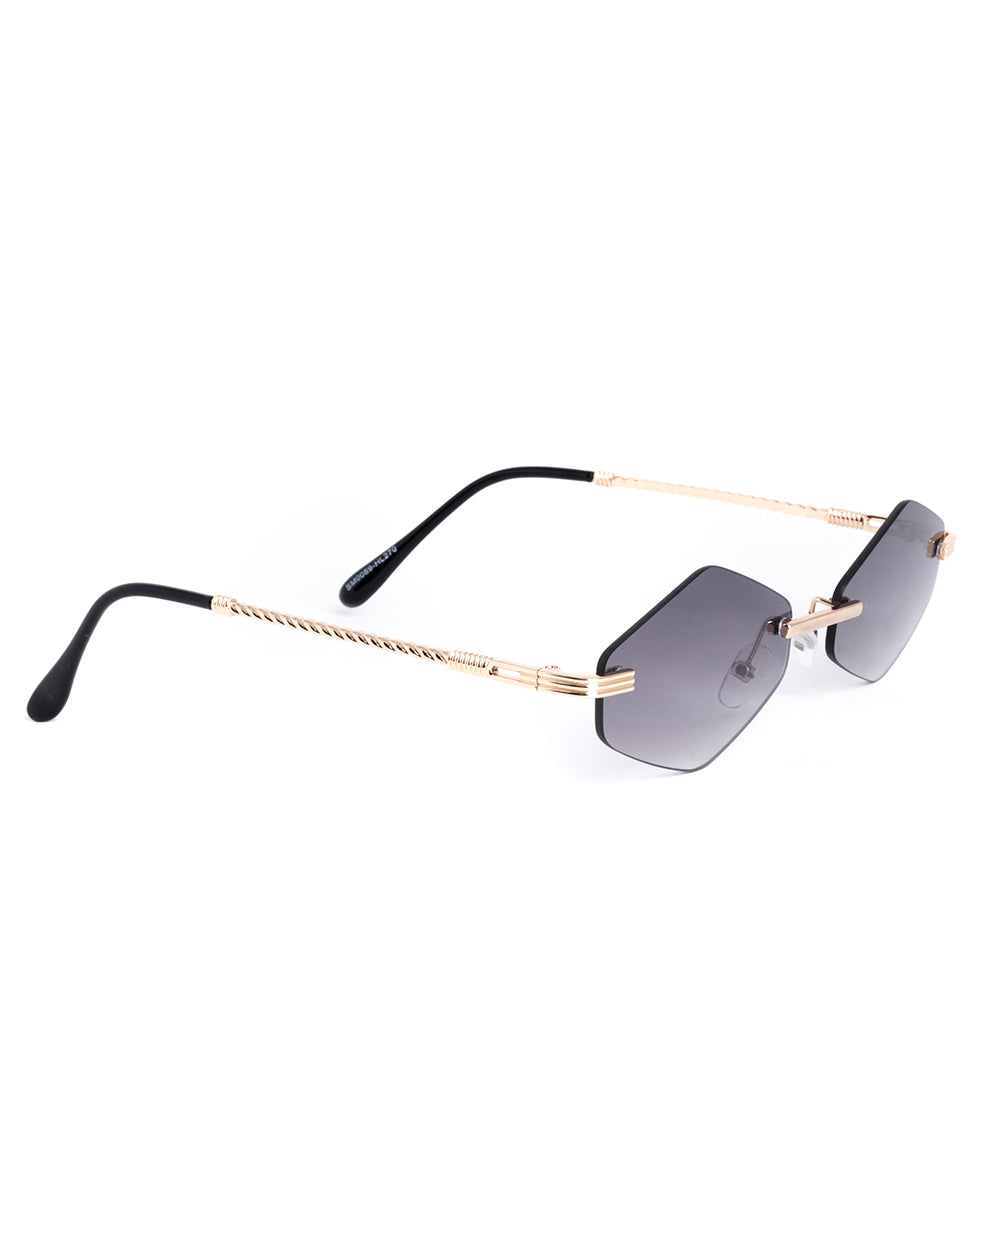 Occhiali da Sole Uomo Unisex Sunglassess Casual Lenti Nere Metallo GIOSAL-OC1045A